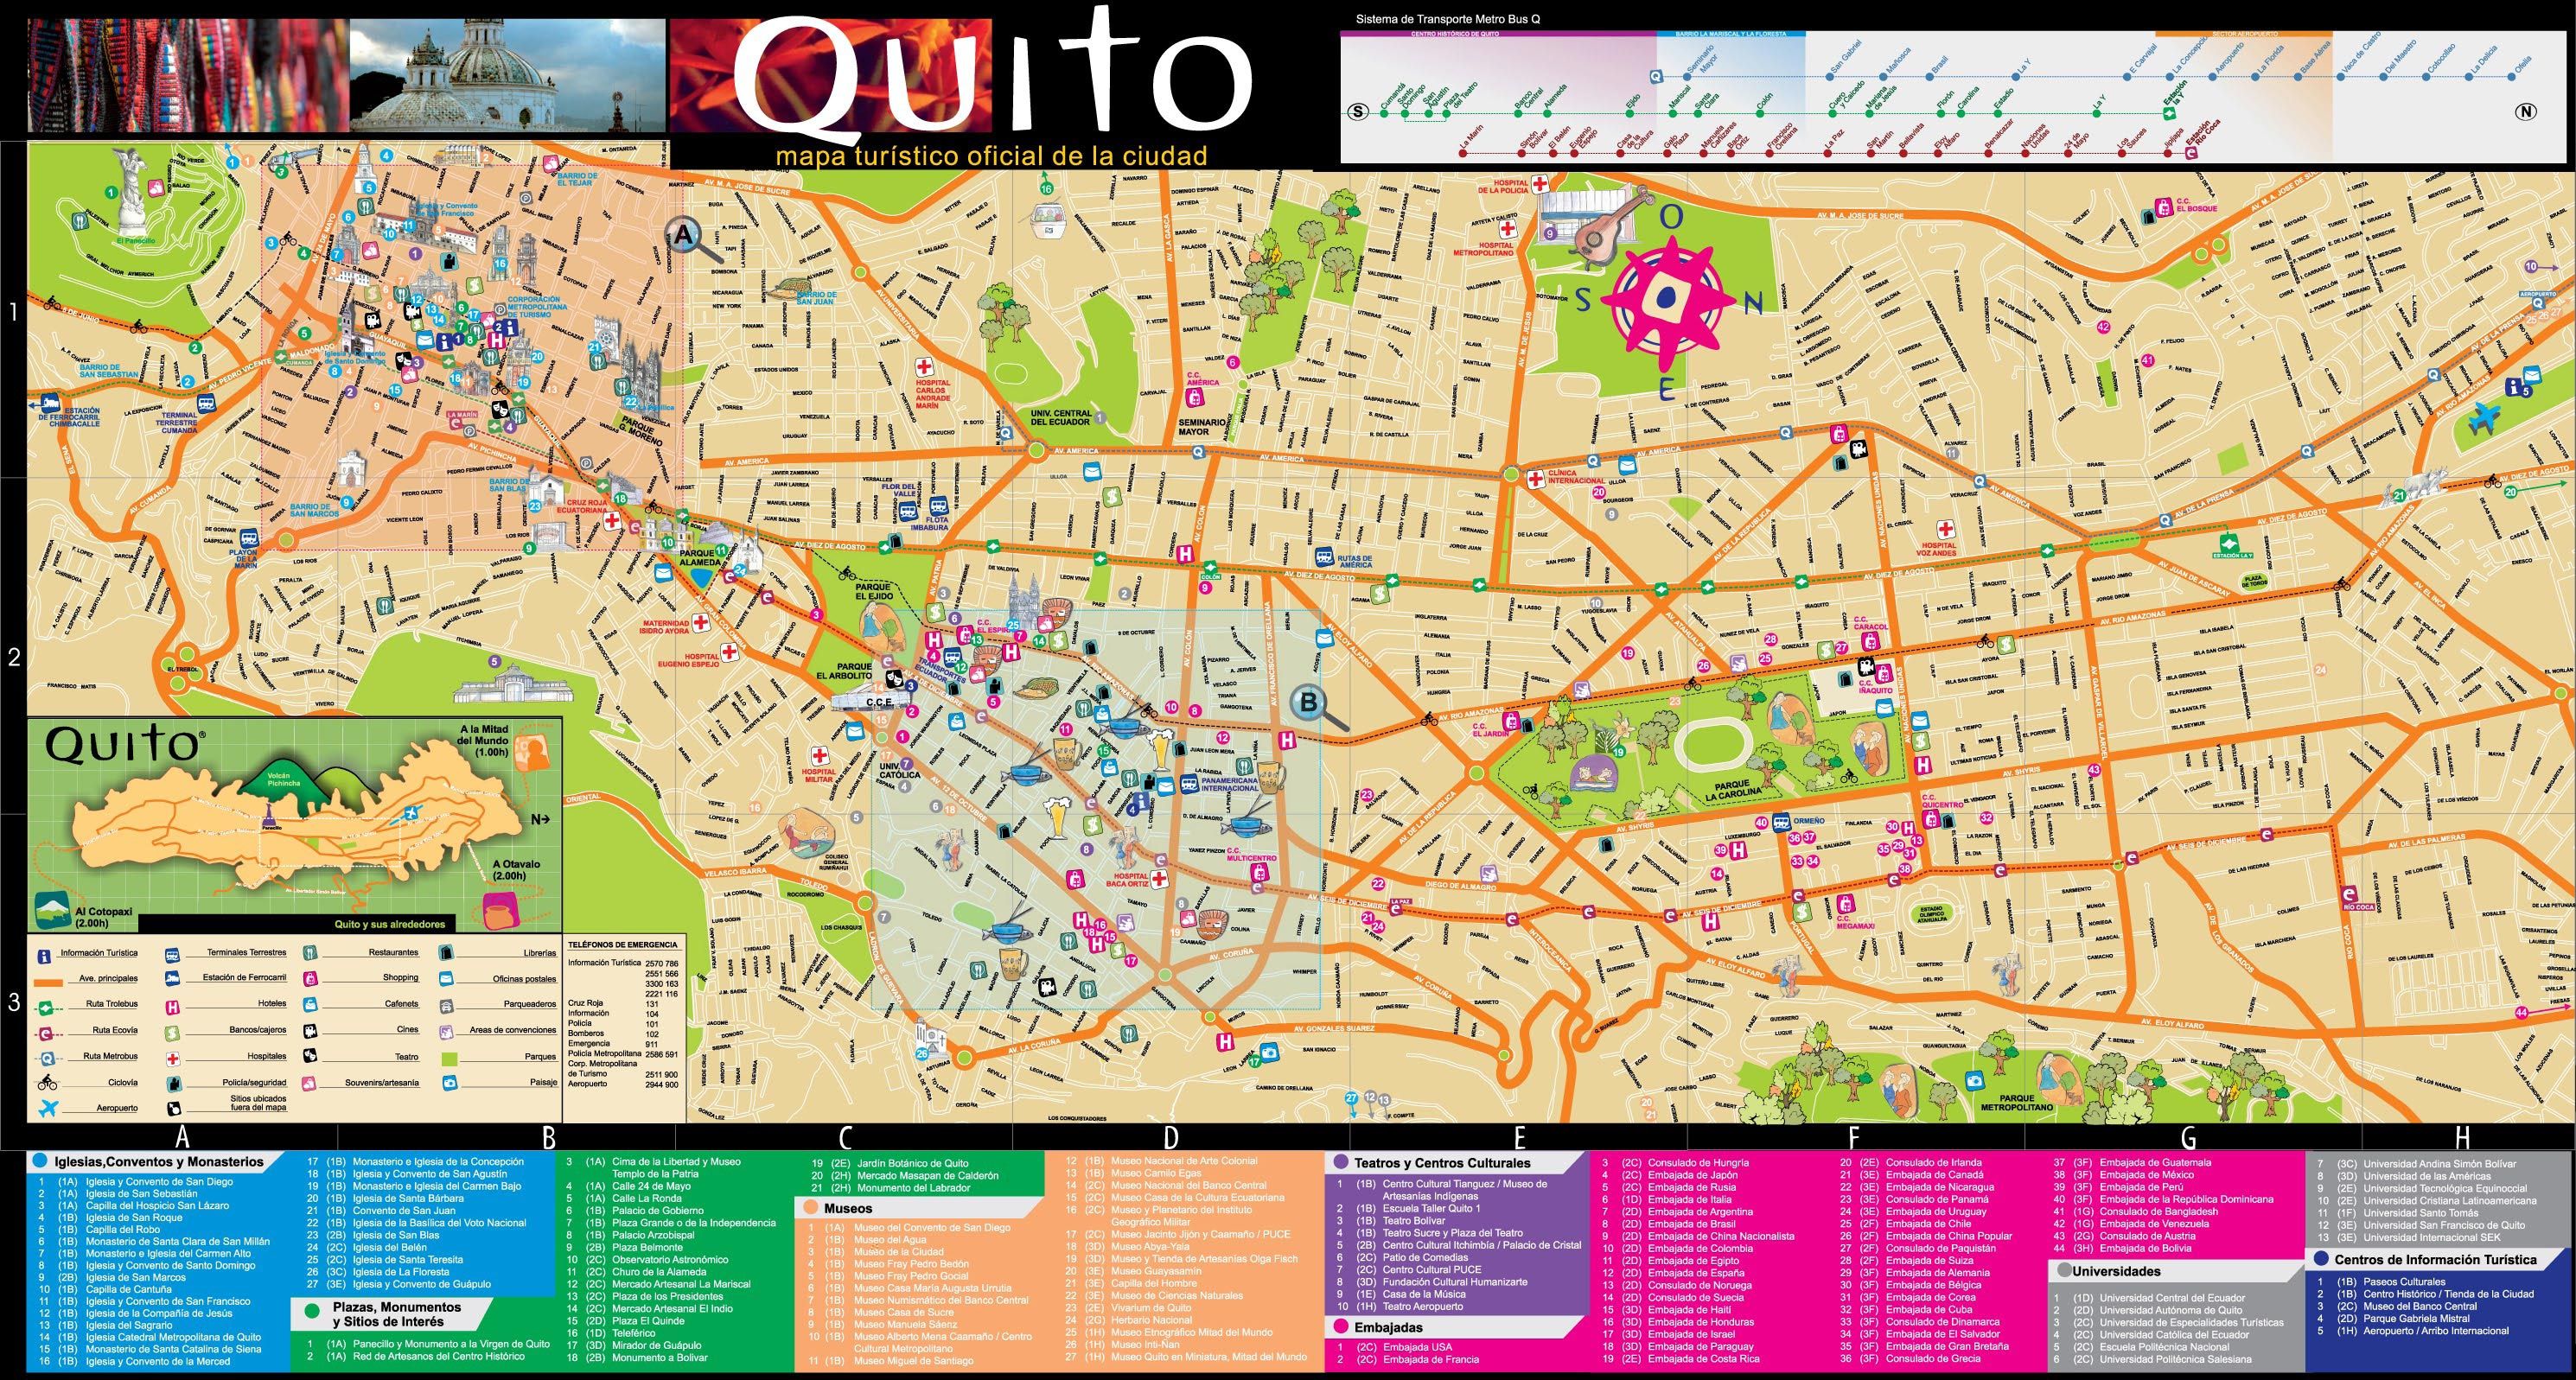 Tout Savoir Sur La Ville De Quito Capitale De Lequateur